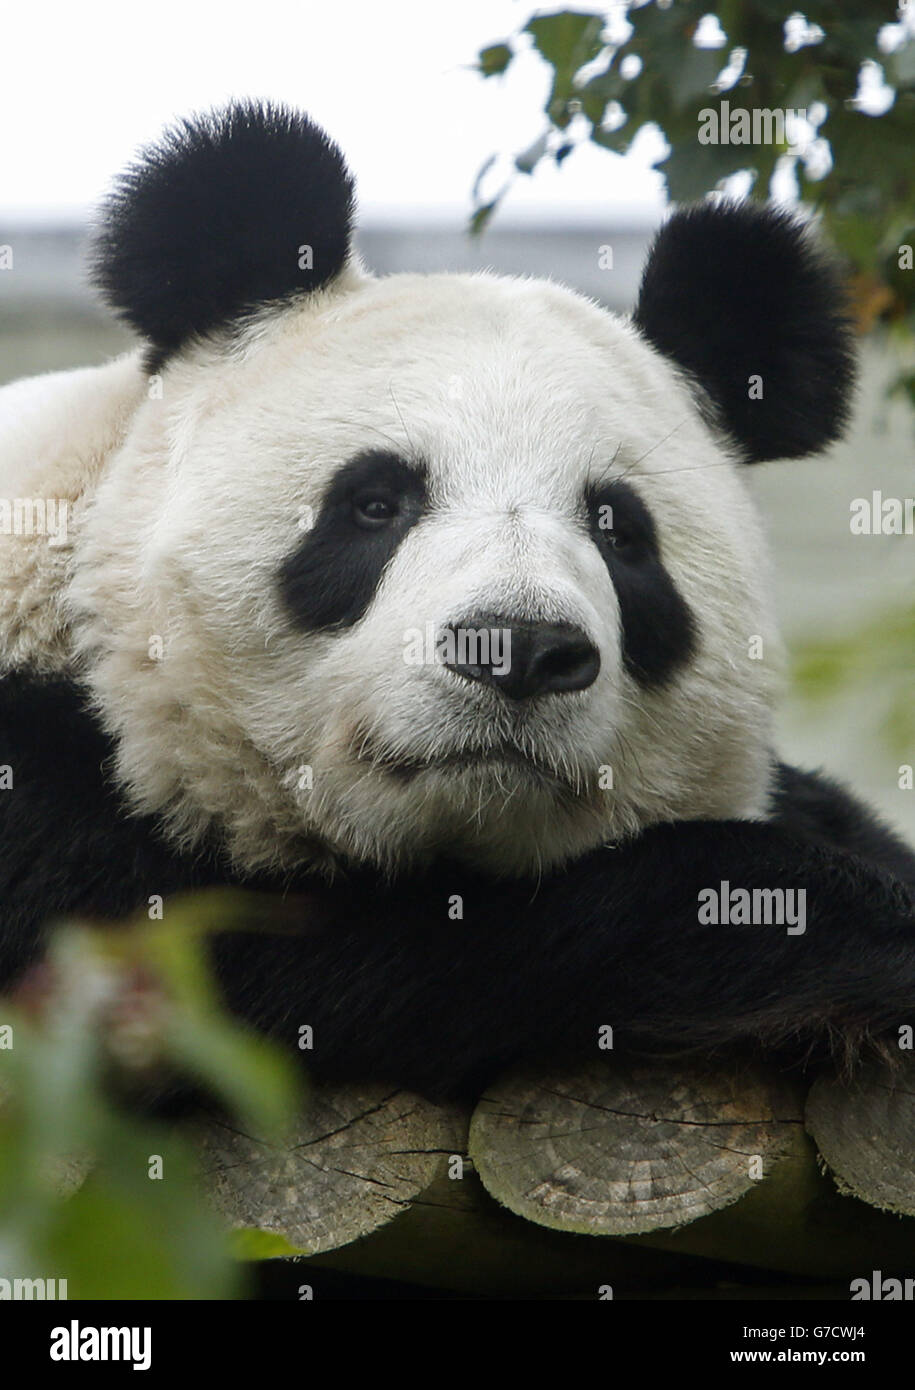 Der riesige Panda Tian Tian im Zoo von Edinburgh, der nicht mehr schwanger ist, hat der Zoo angekündigt. Stockfoto